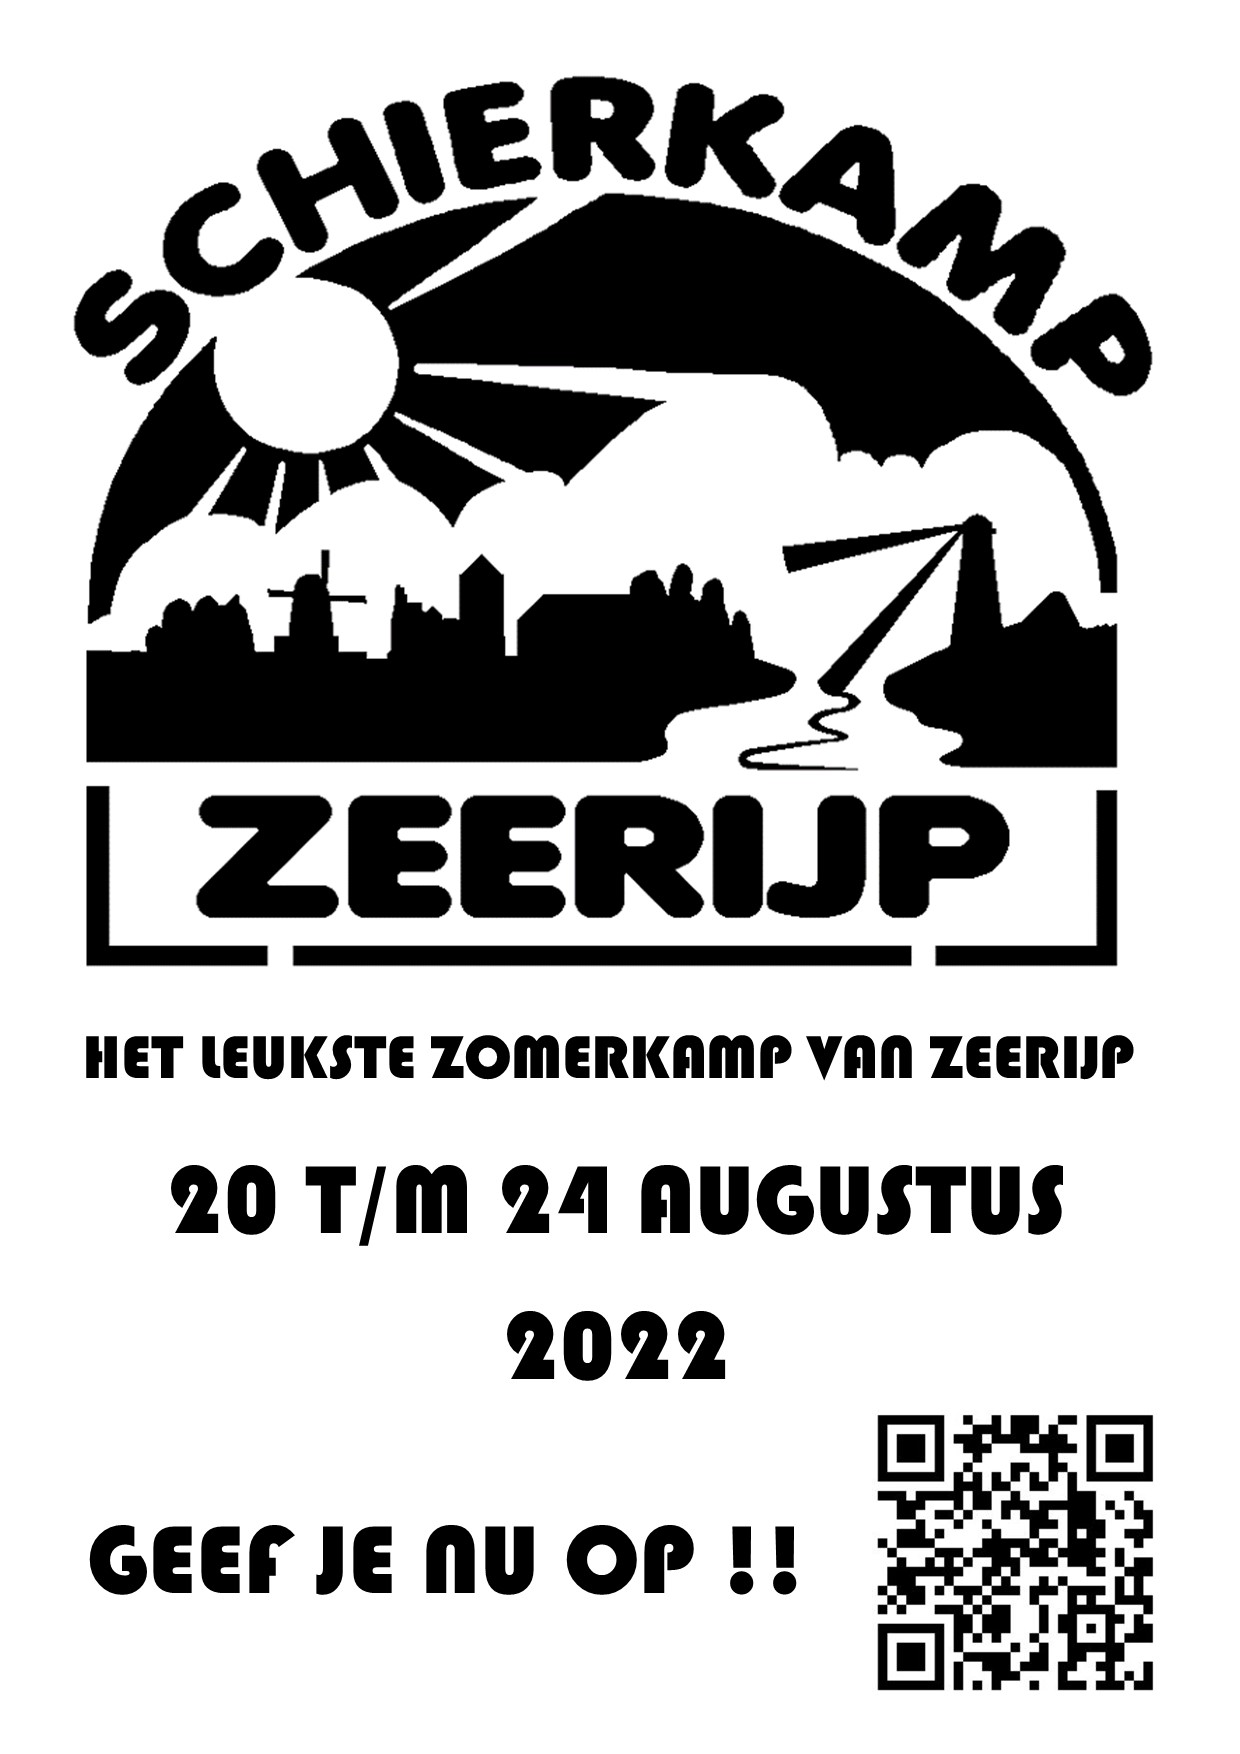 Schierkamp 2022